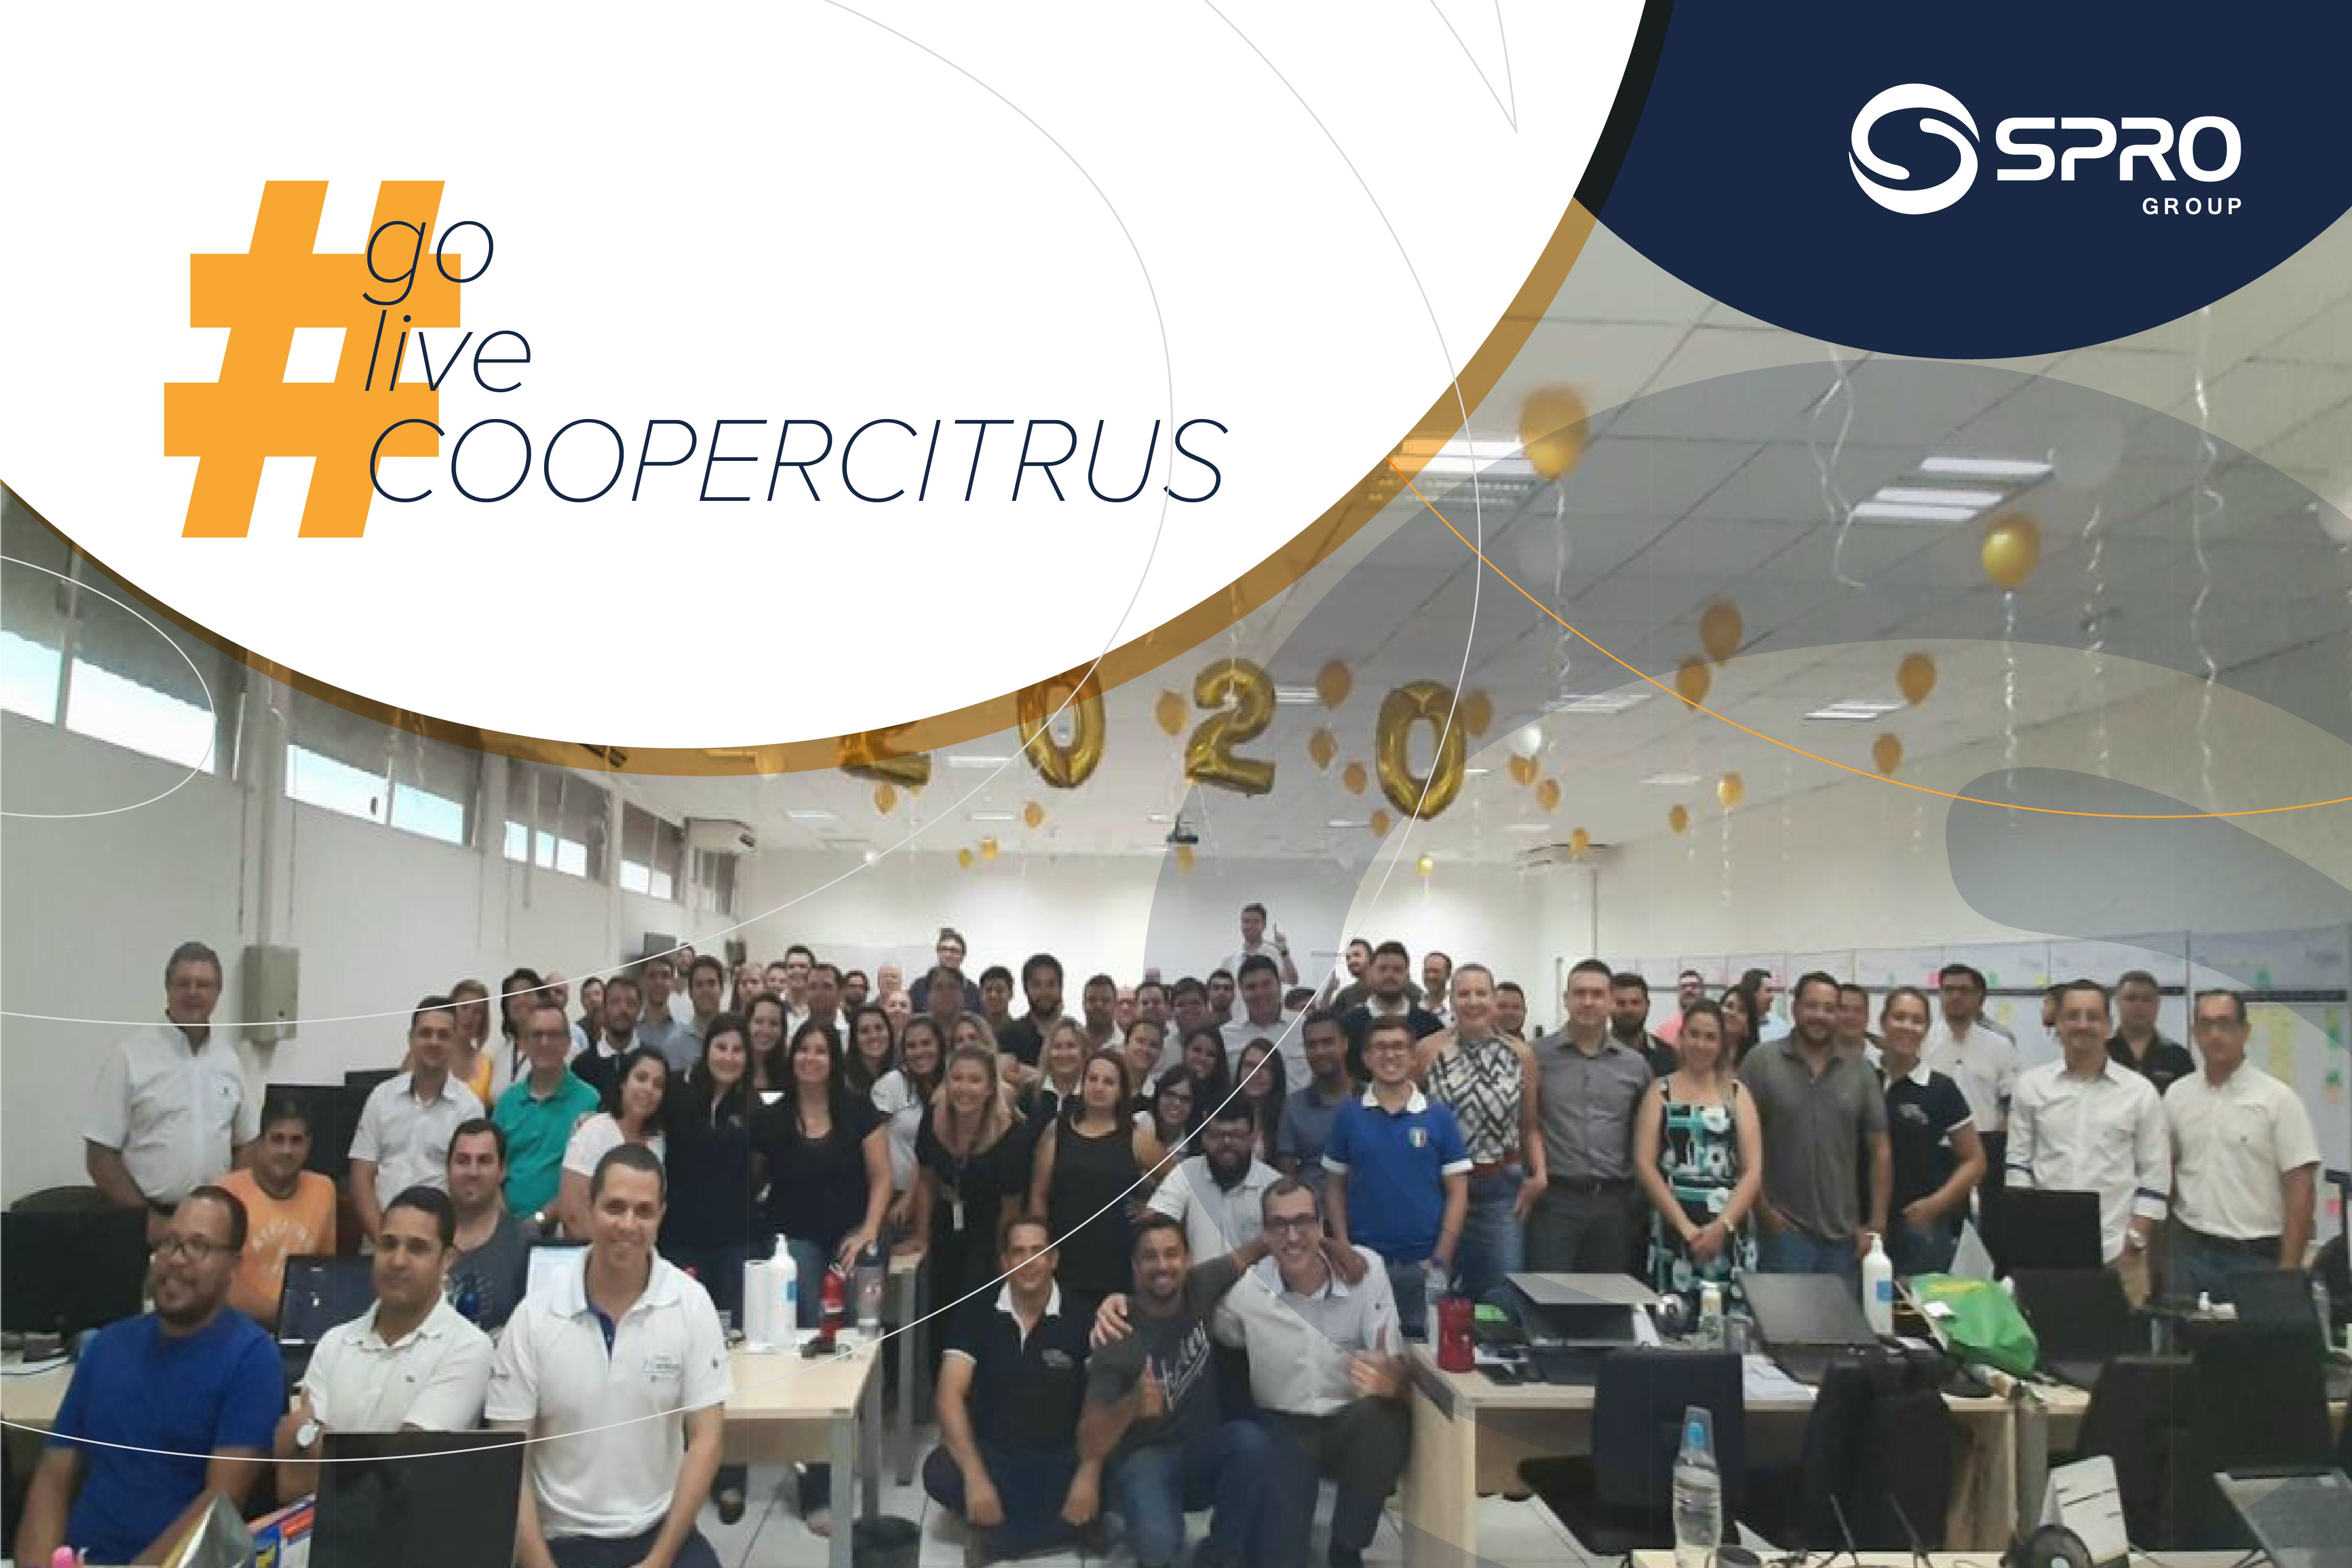 SPRO IT Solutions implementa SAP S/4HANA na maior cooperativa do estado de São Paulo